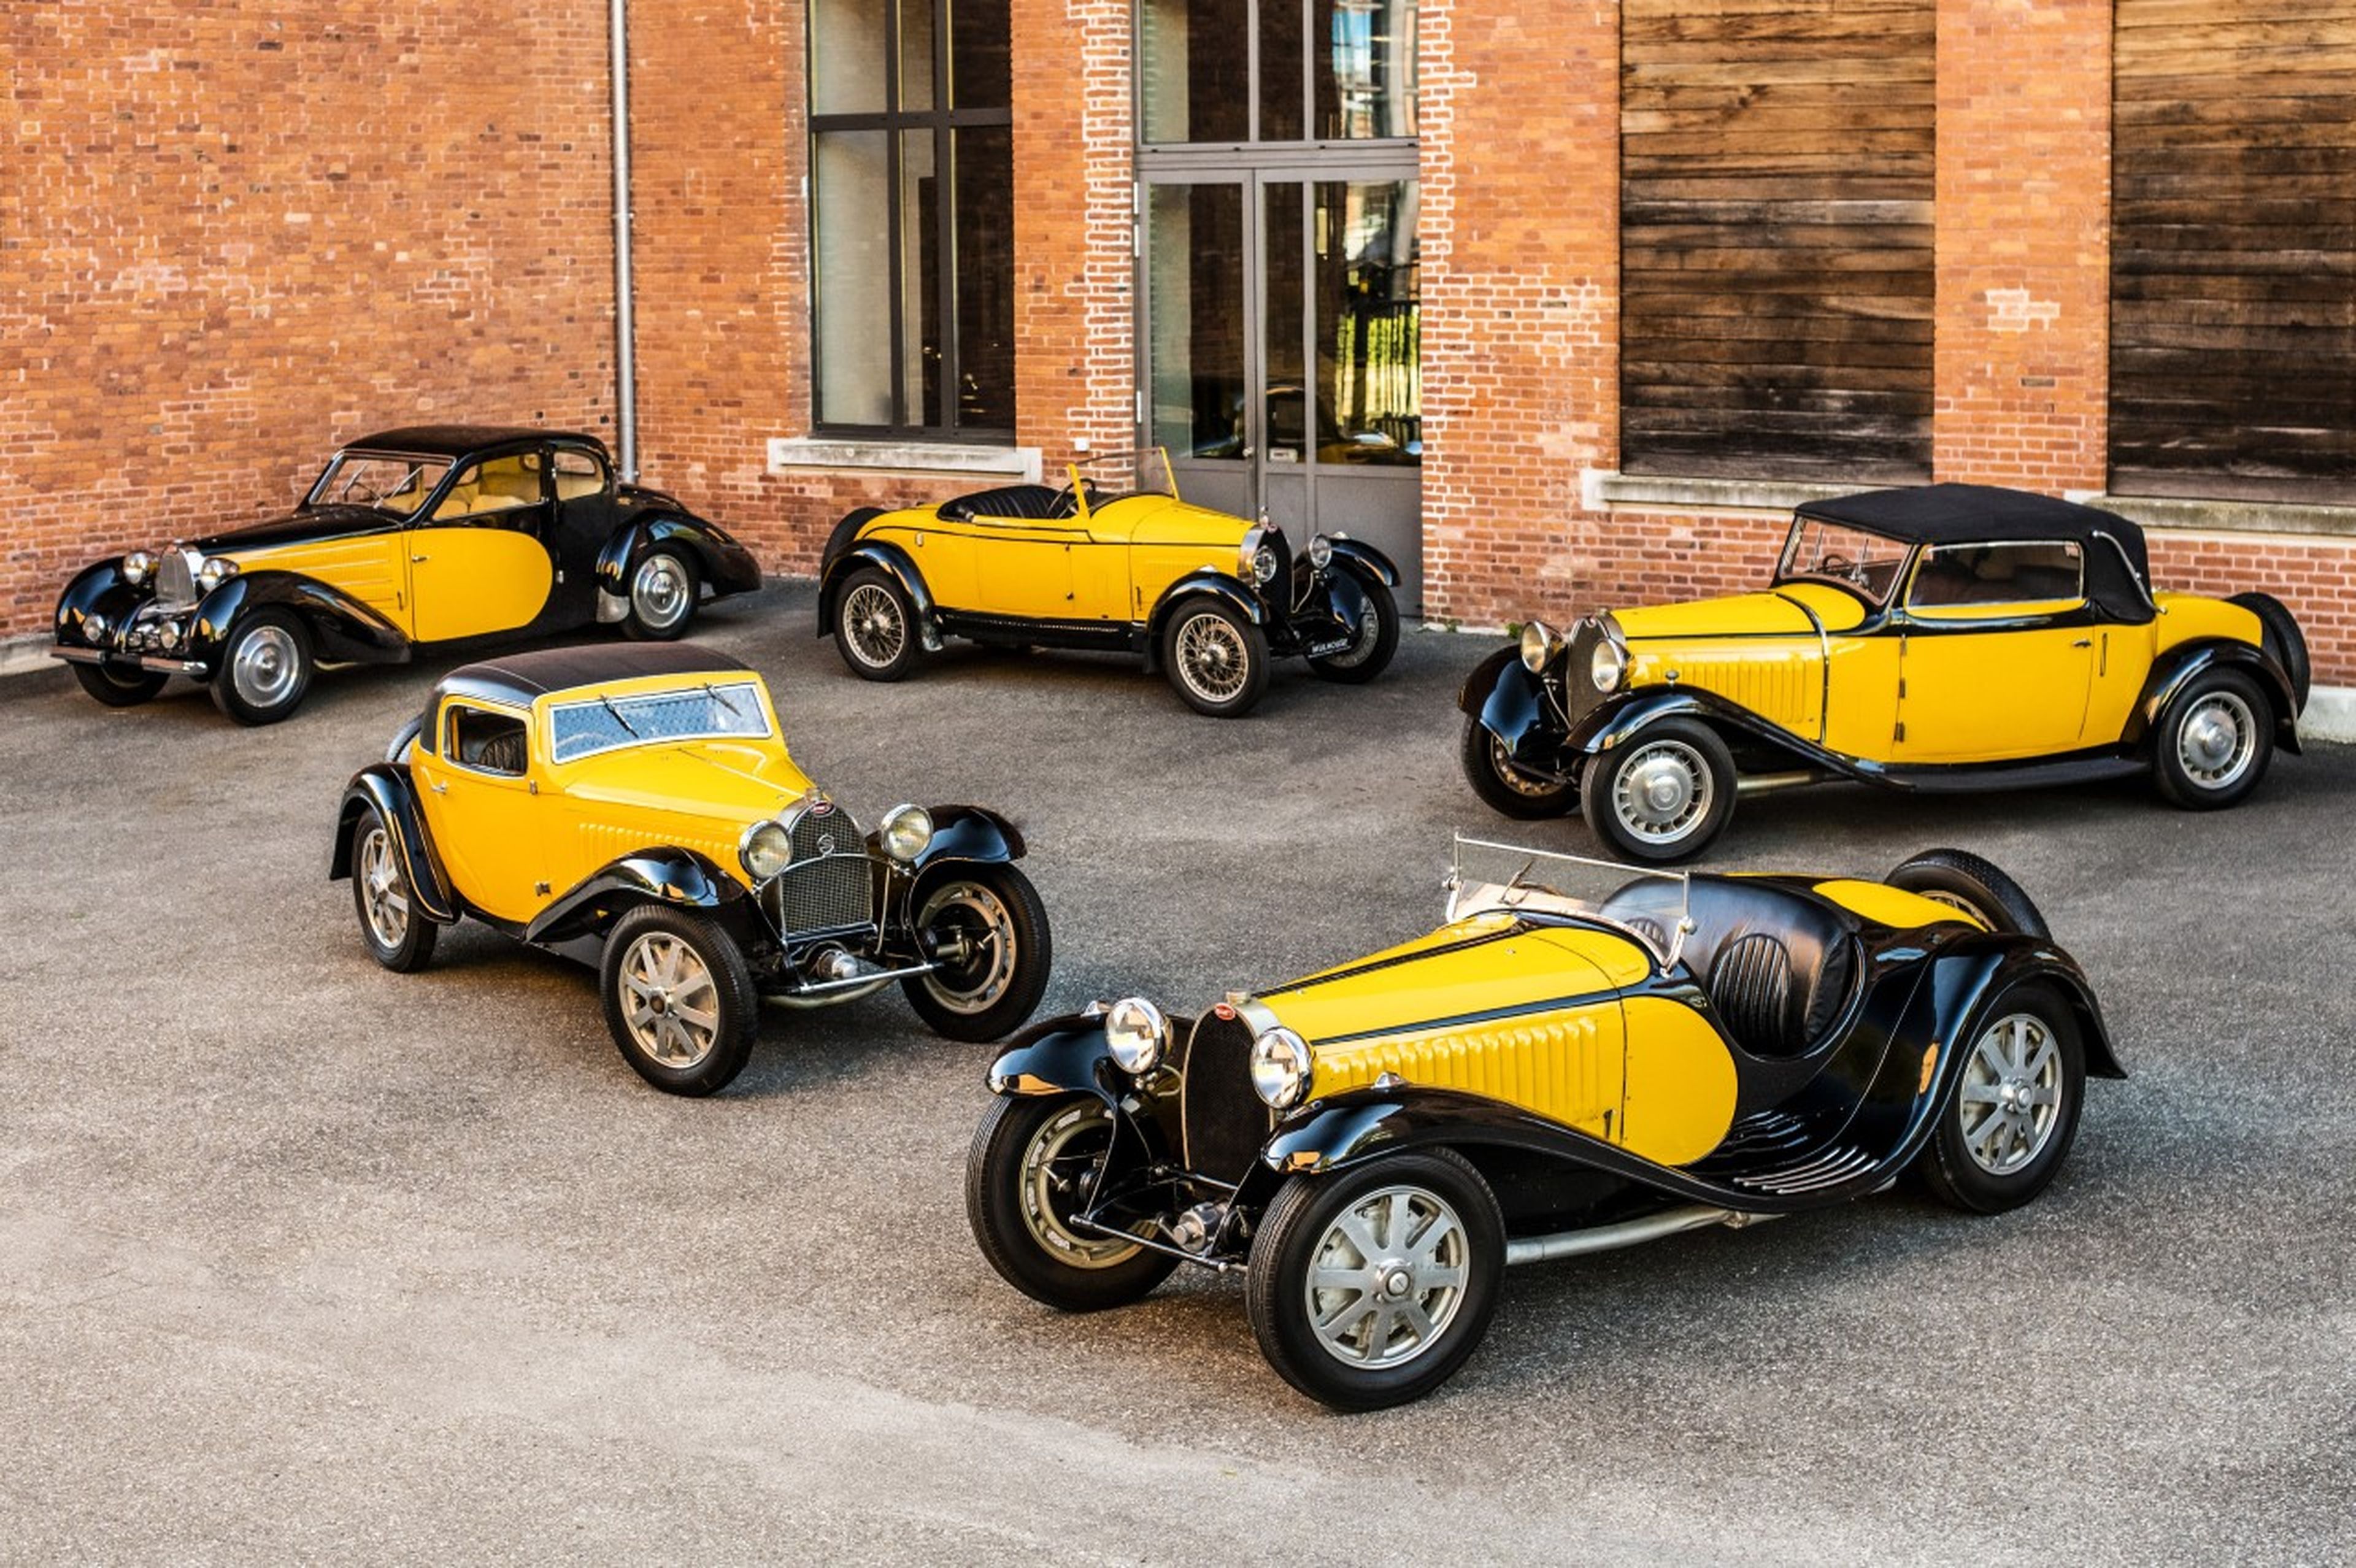 Negro y amarillo, la combinación atemporal de colores que rinde homenaje a Ettore Bugatti